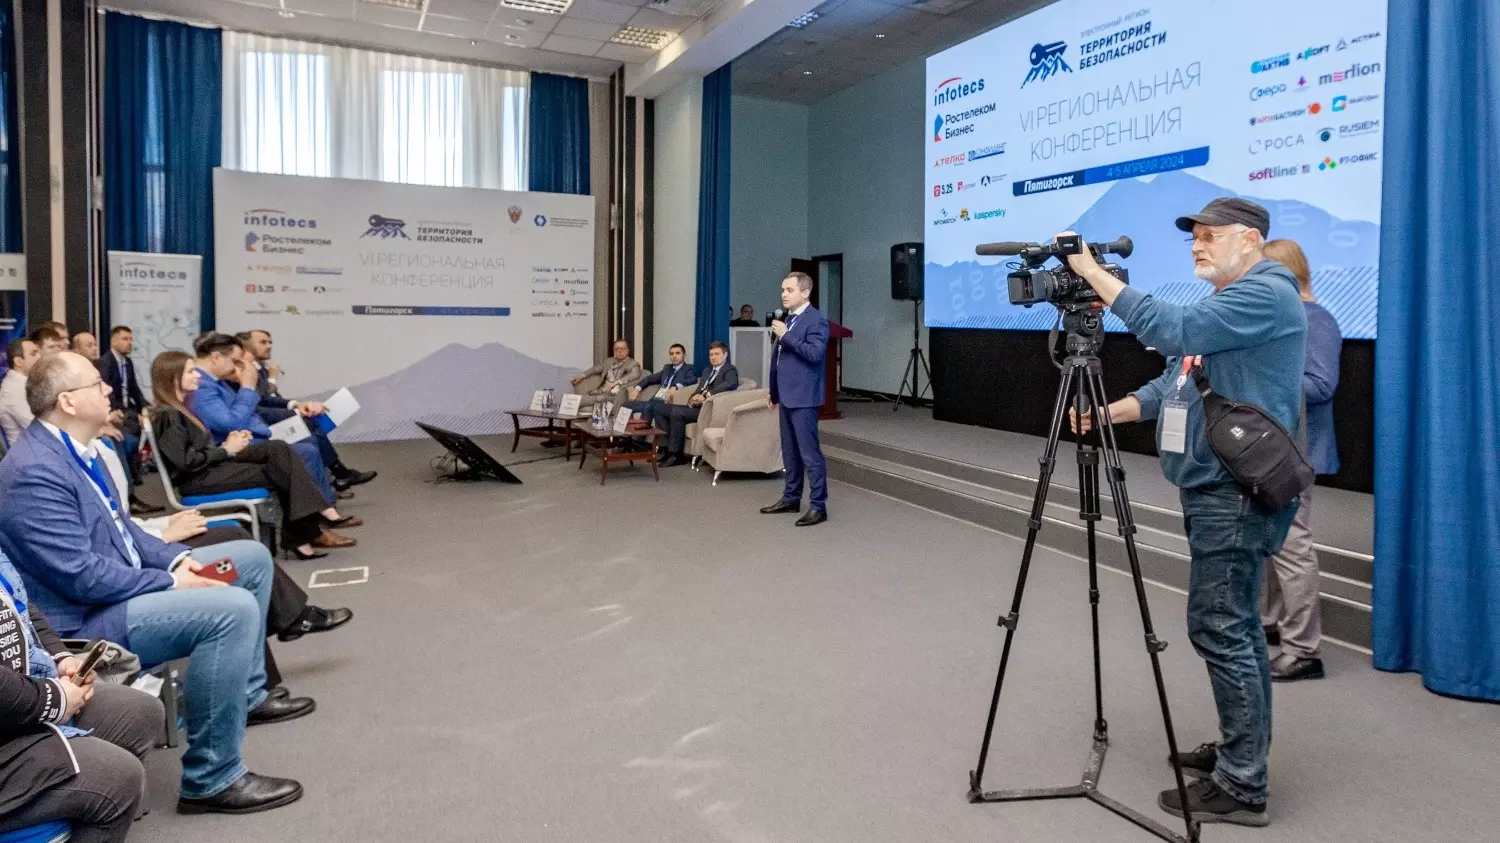 «Ростелеком» представил решения для защиты от киберугроз на конференции в Пятигорске0